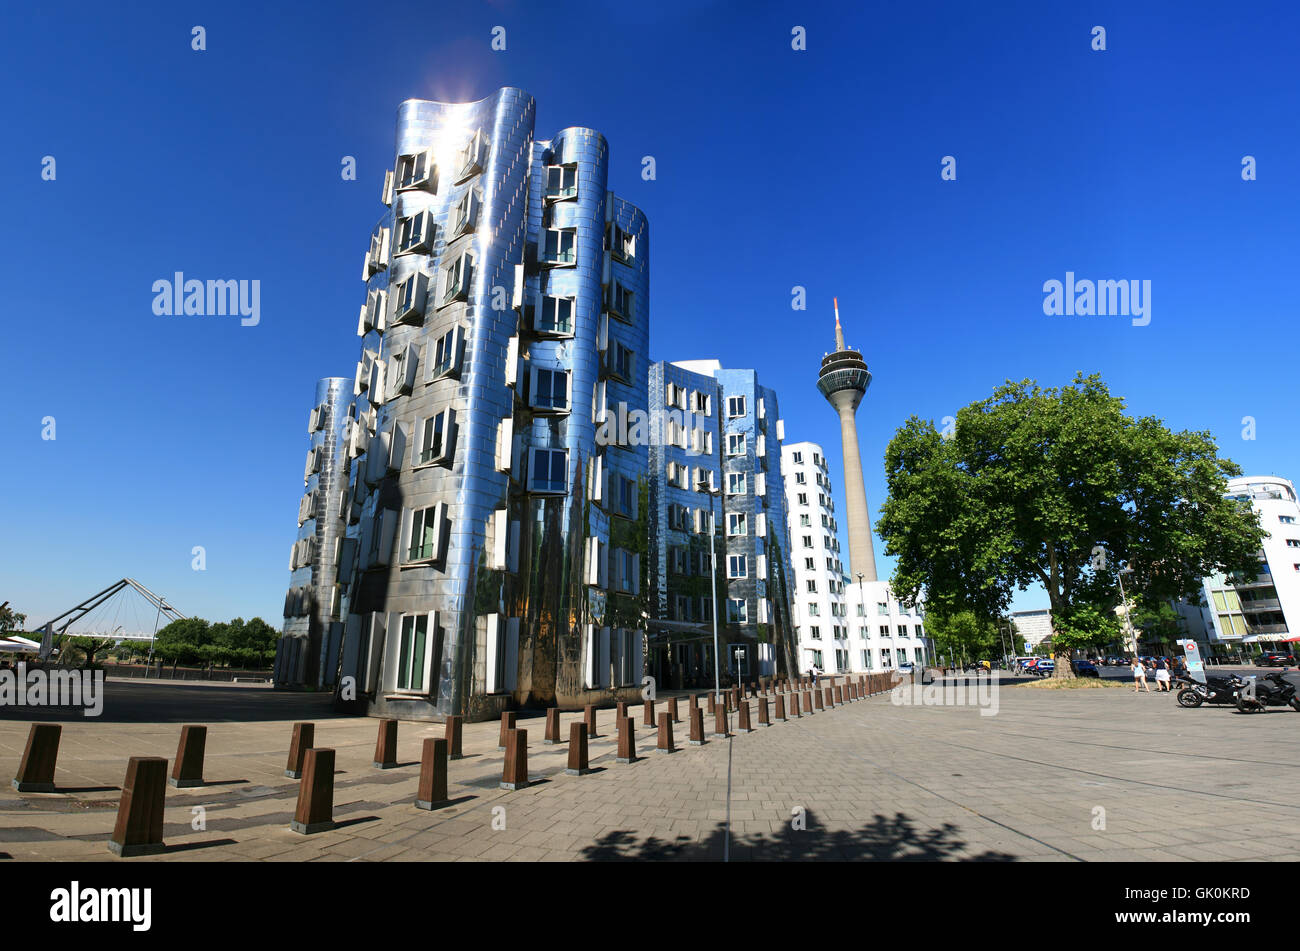 Alemania, República Federal de Alemania fachada Foto de stock